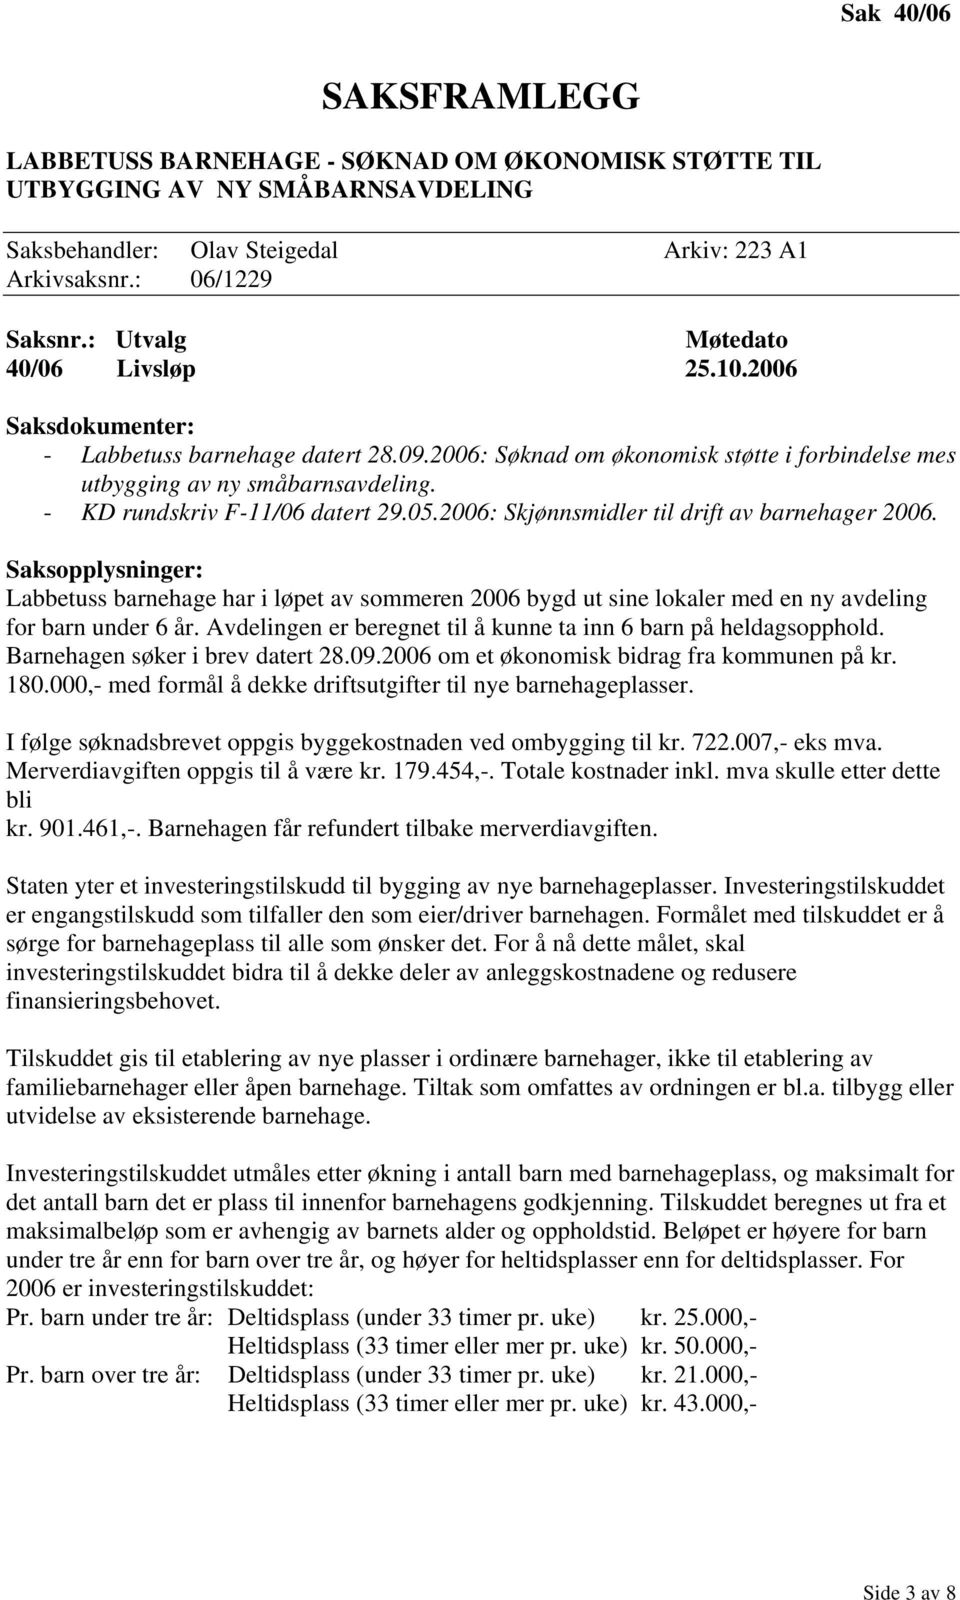 - KD rundskriv F-11/06 datert 29.05.2006: Skjønnsmidler til drift av barnehager 2006.